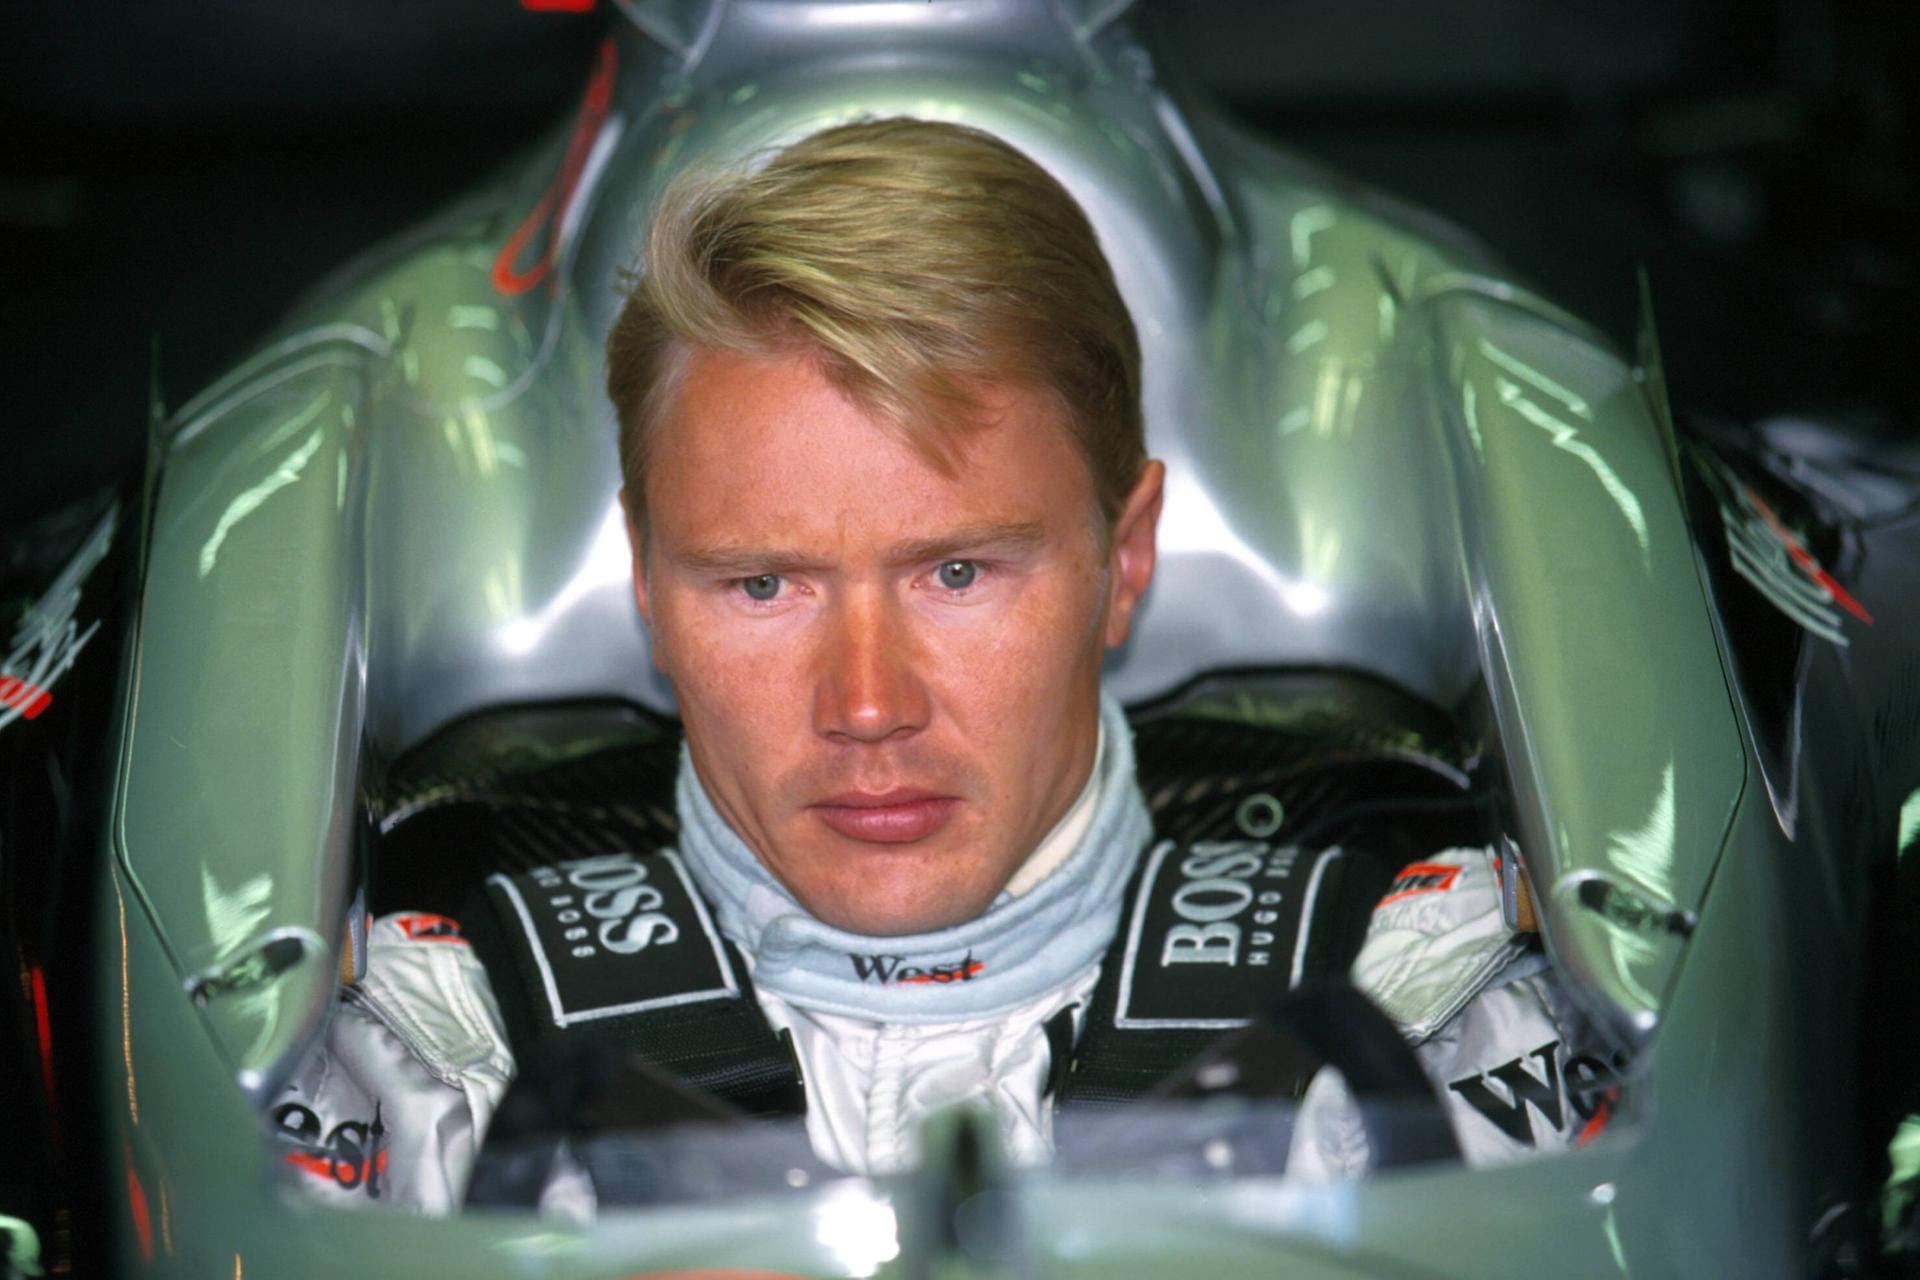 Mika Häkkinen im Mercedes-Cockpit in der Saison 1999: "Der fliegende Finne" war der große Rivale von Michael Schumacher, holte sich 1998 und 1999 den Titel. Schumi erklärte einst sogar, der Wettbewerb mit dem stillen Häkkinen sei für ihn am erfüllendsten gewesen. Häkkinen fuhr von 1991 bis 2001 in der Formel 1.